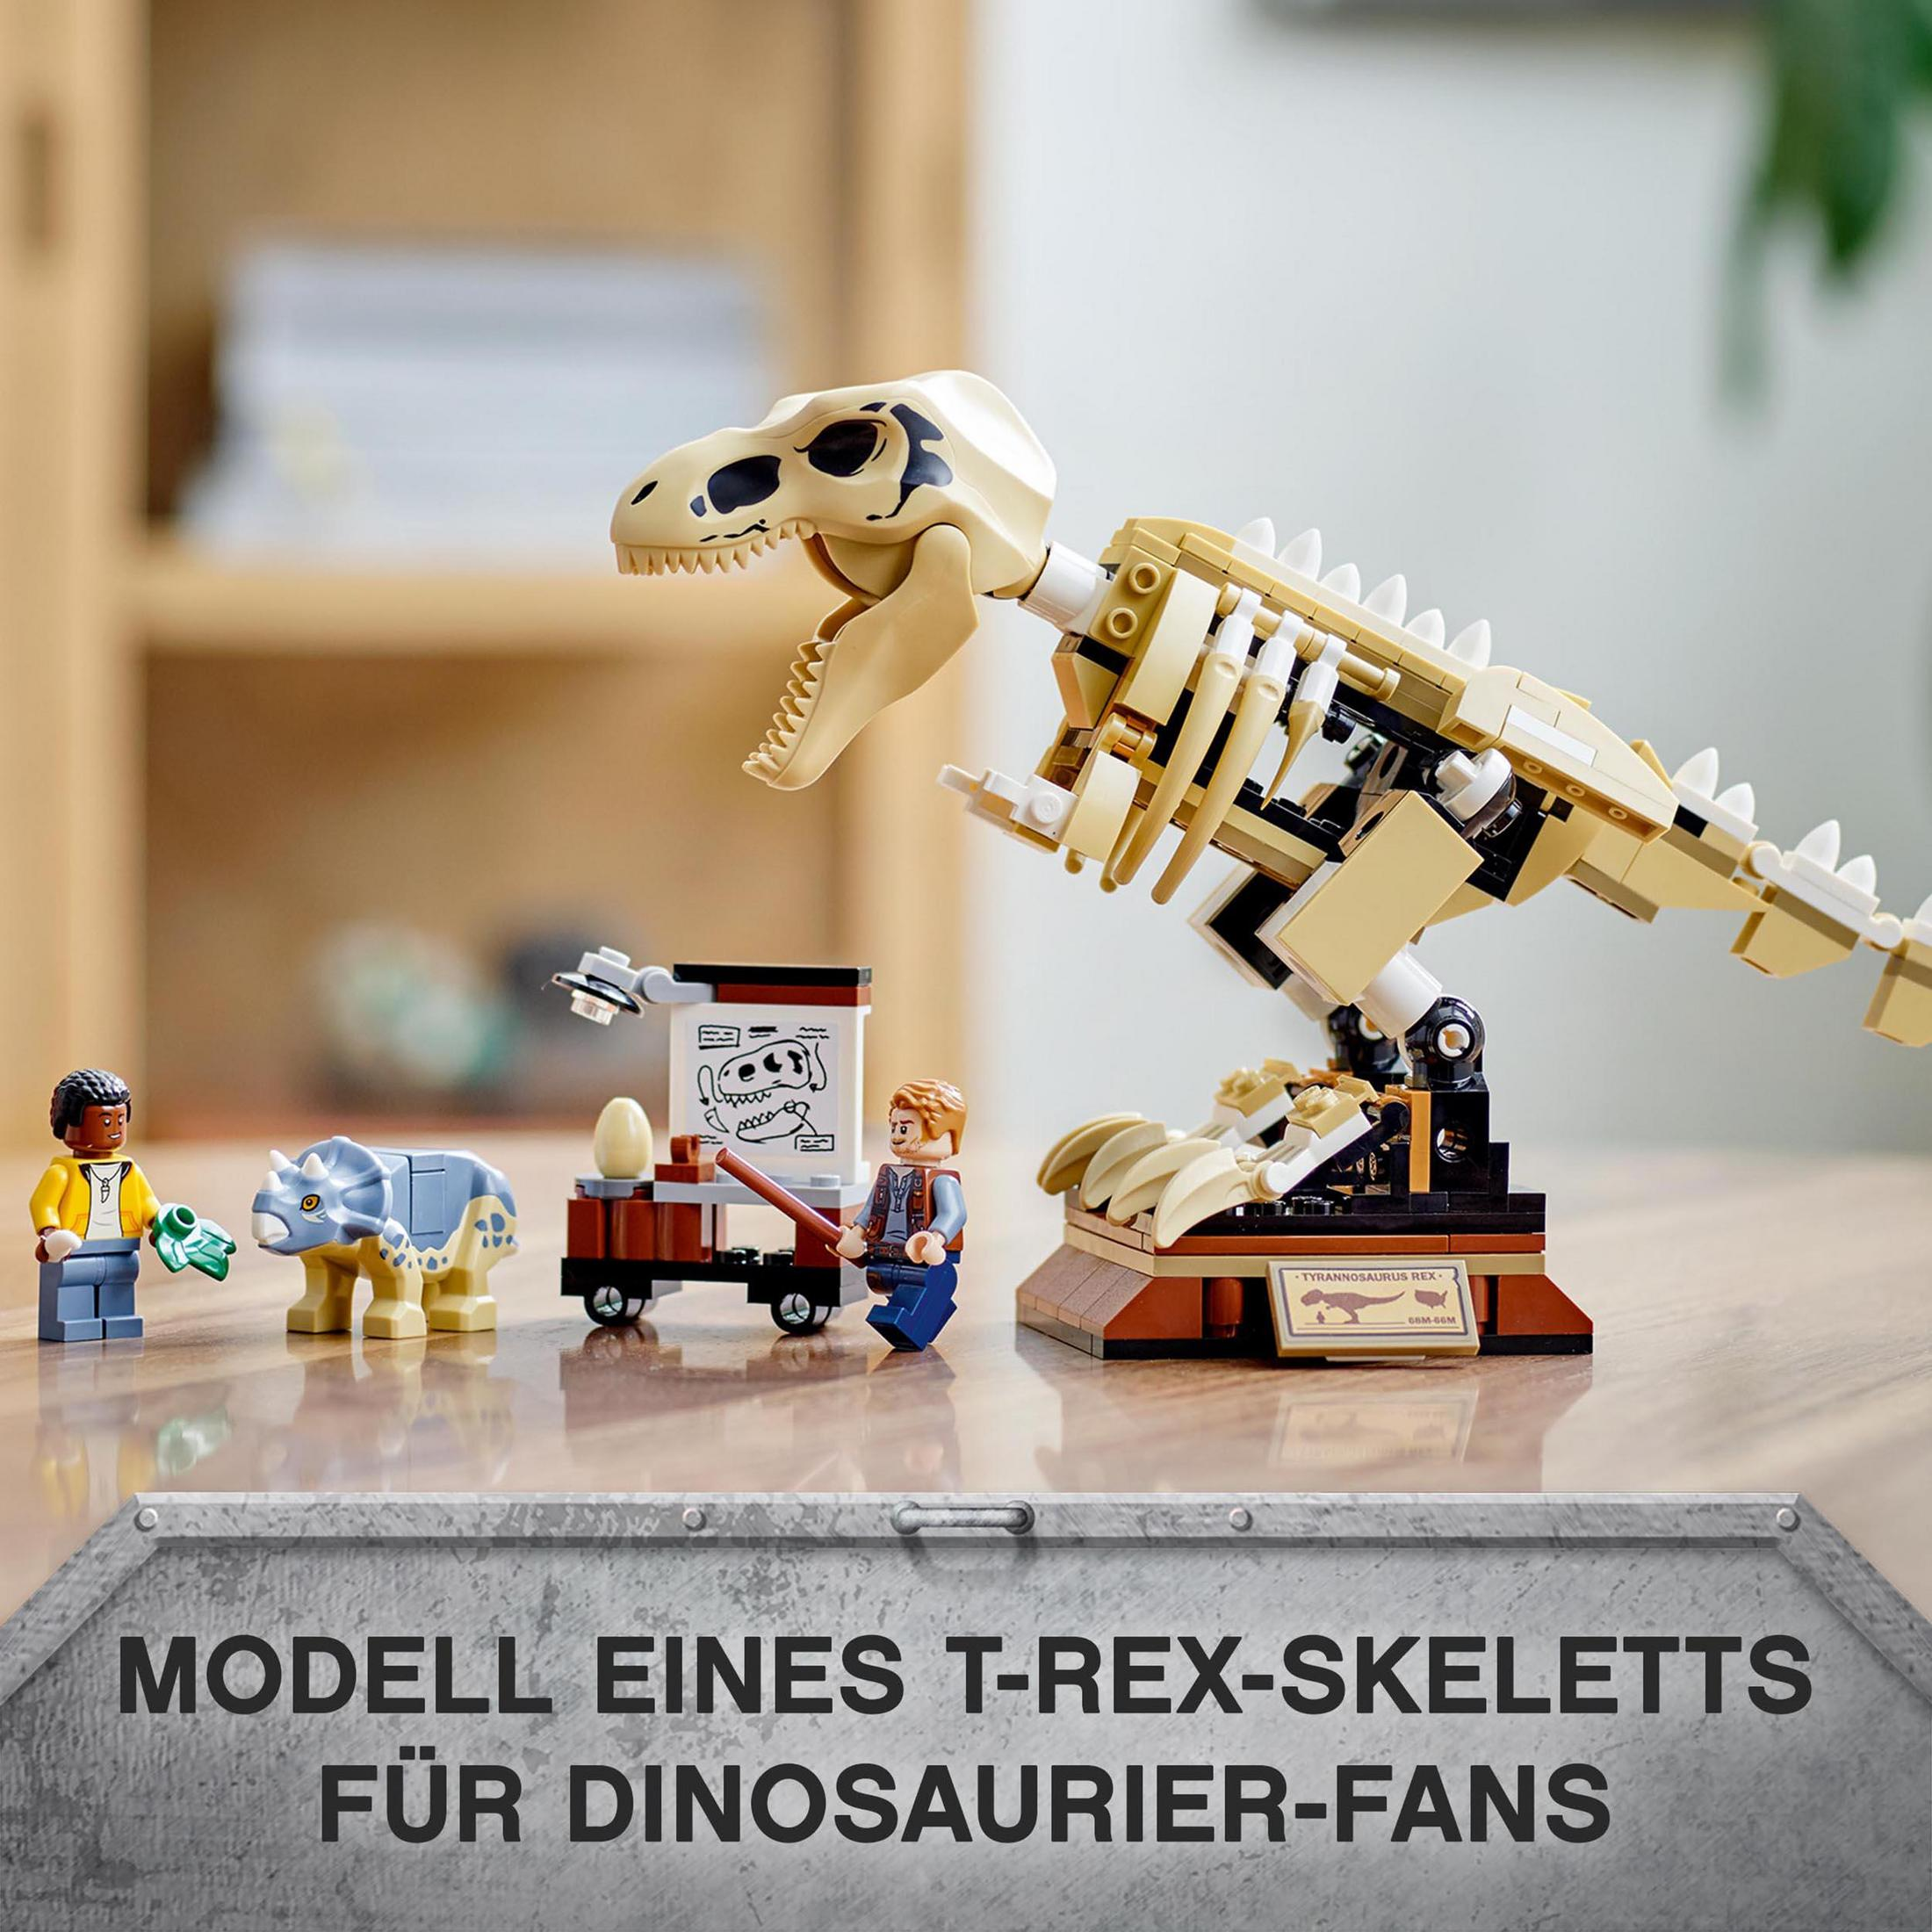 76940 IN LEGO DER FOSSILIENAUSSTELLUNG Bausatz T.REX-SKELETT